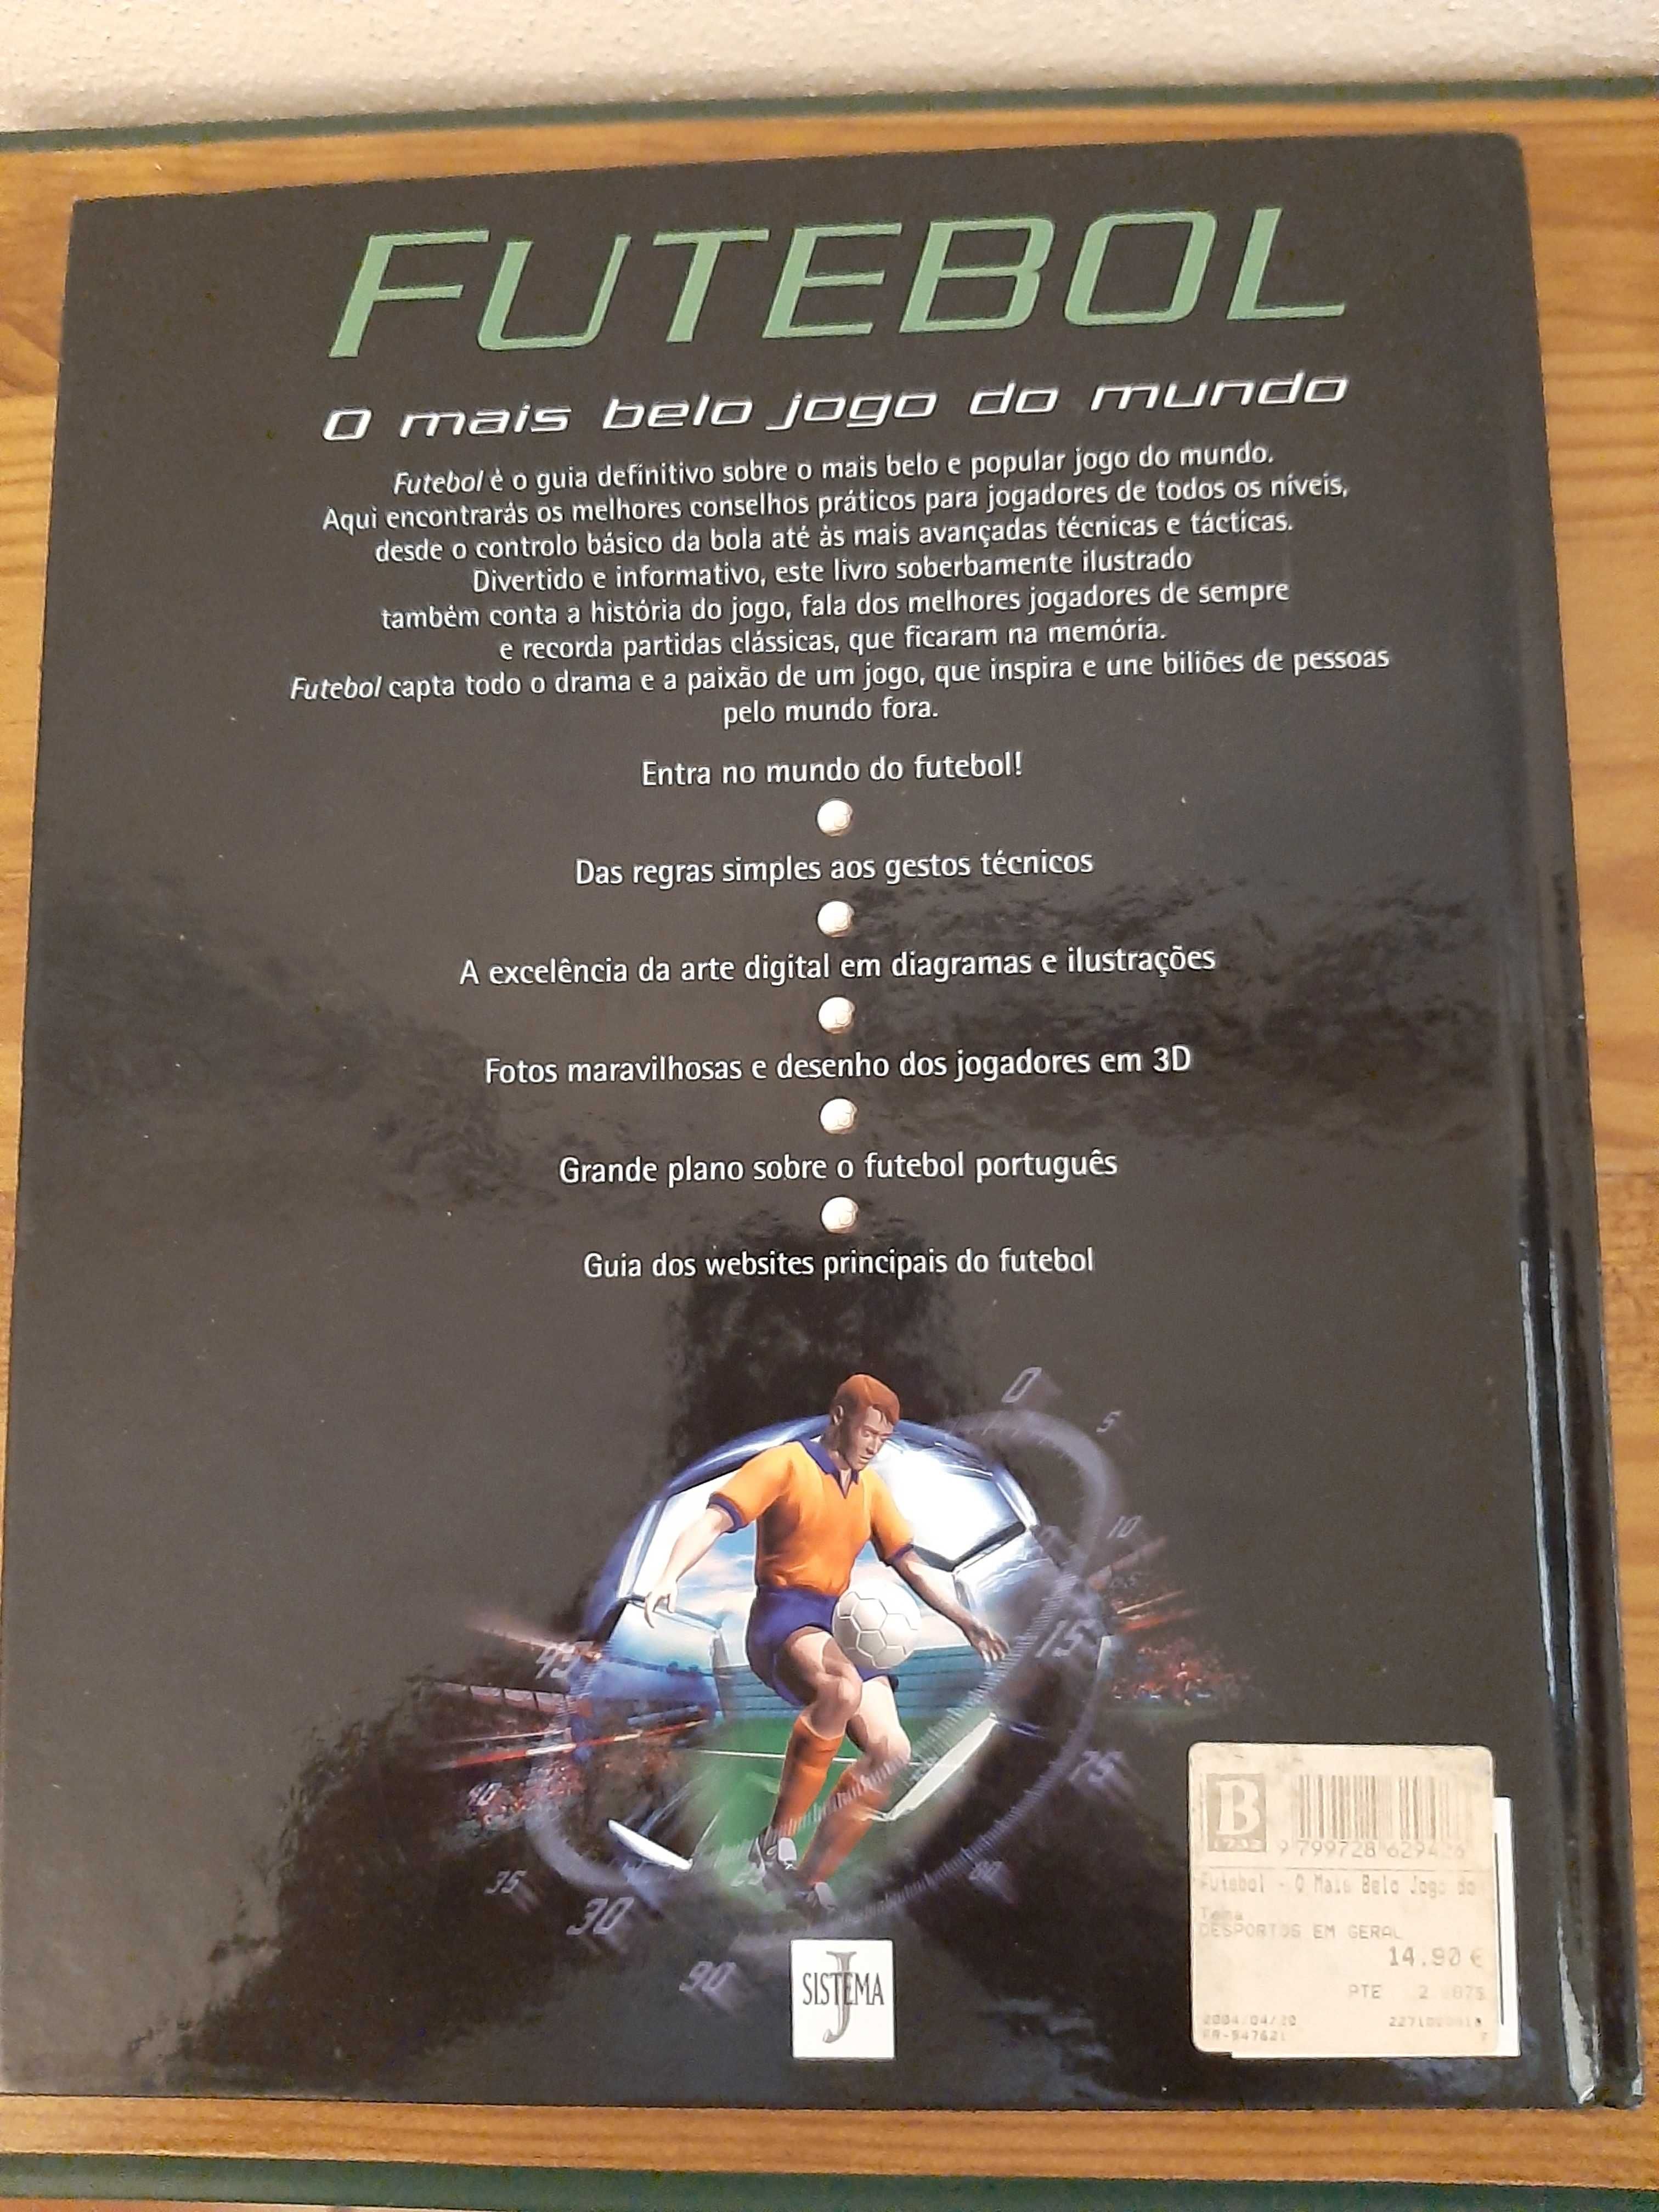 Livro Futebol - O mais belo jogo do mundo de Clive Gifford